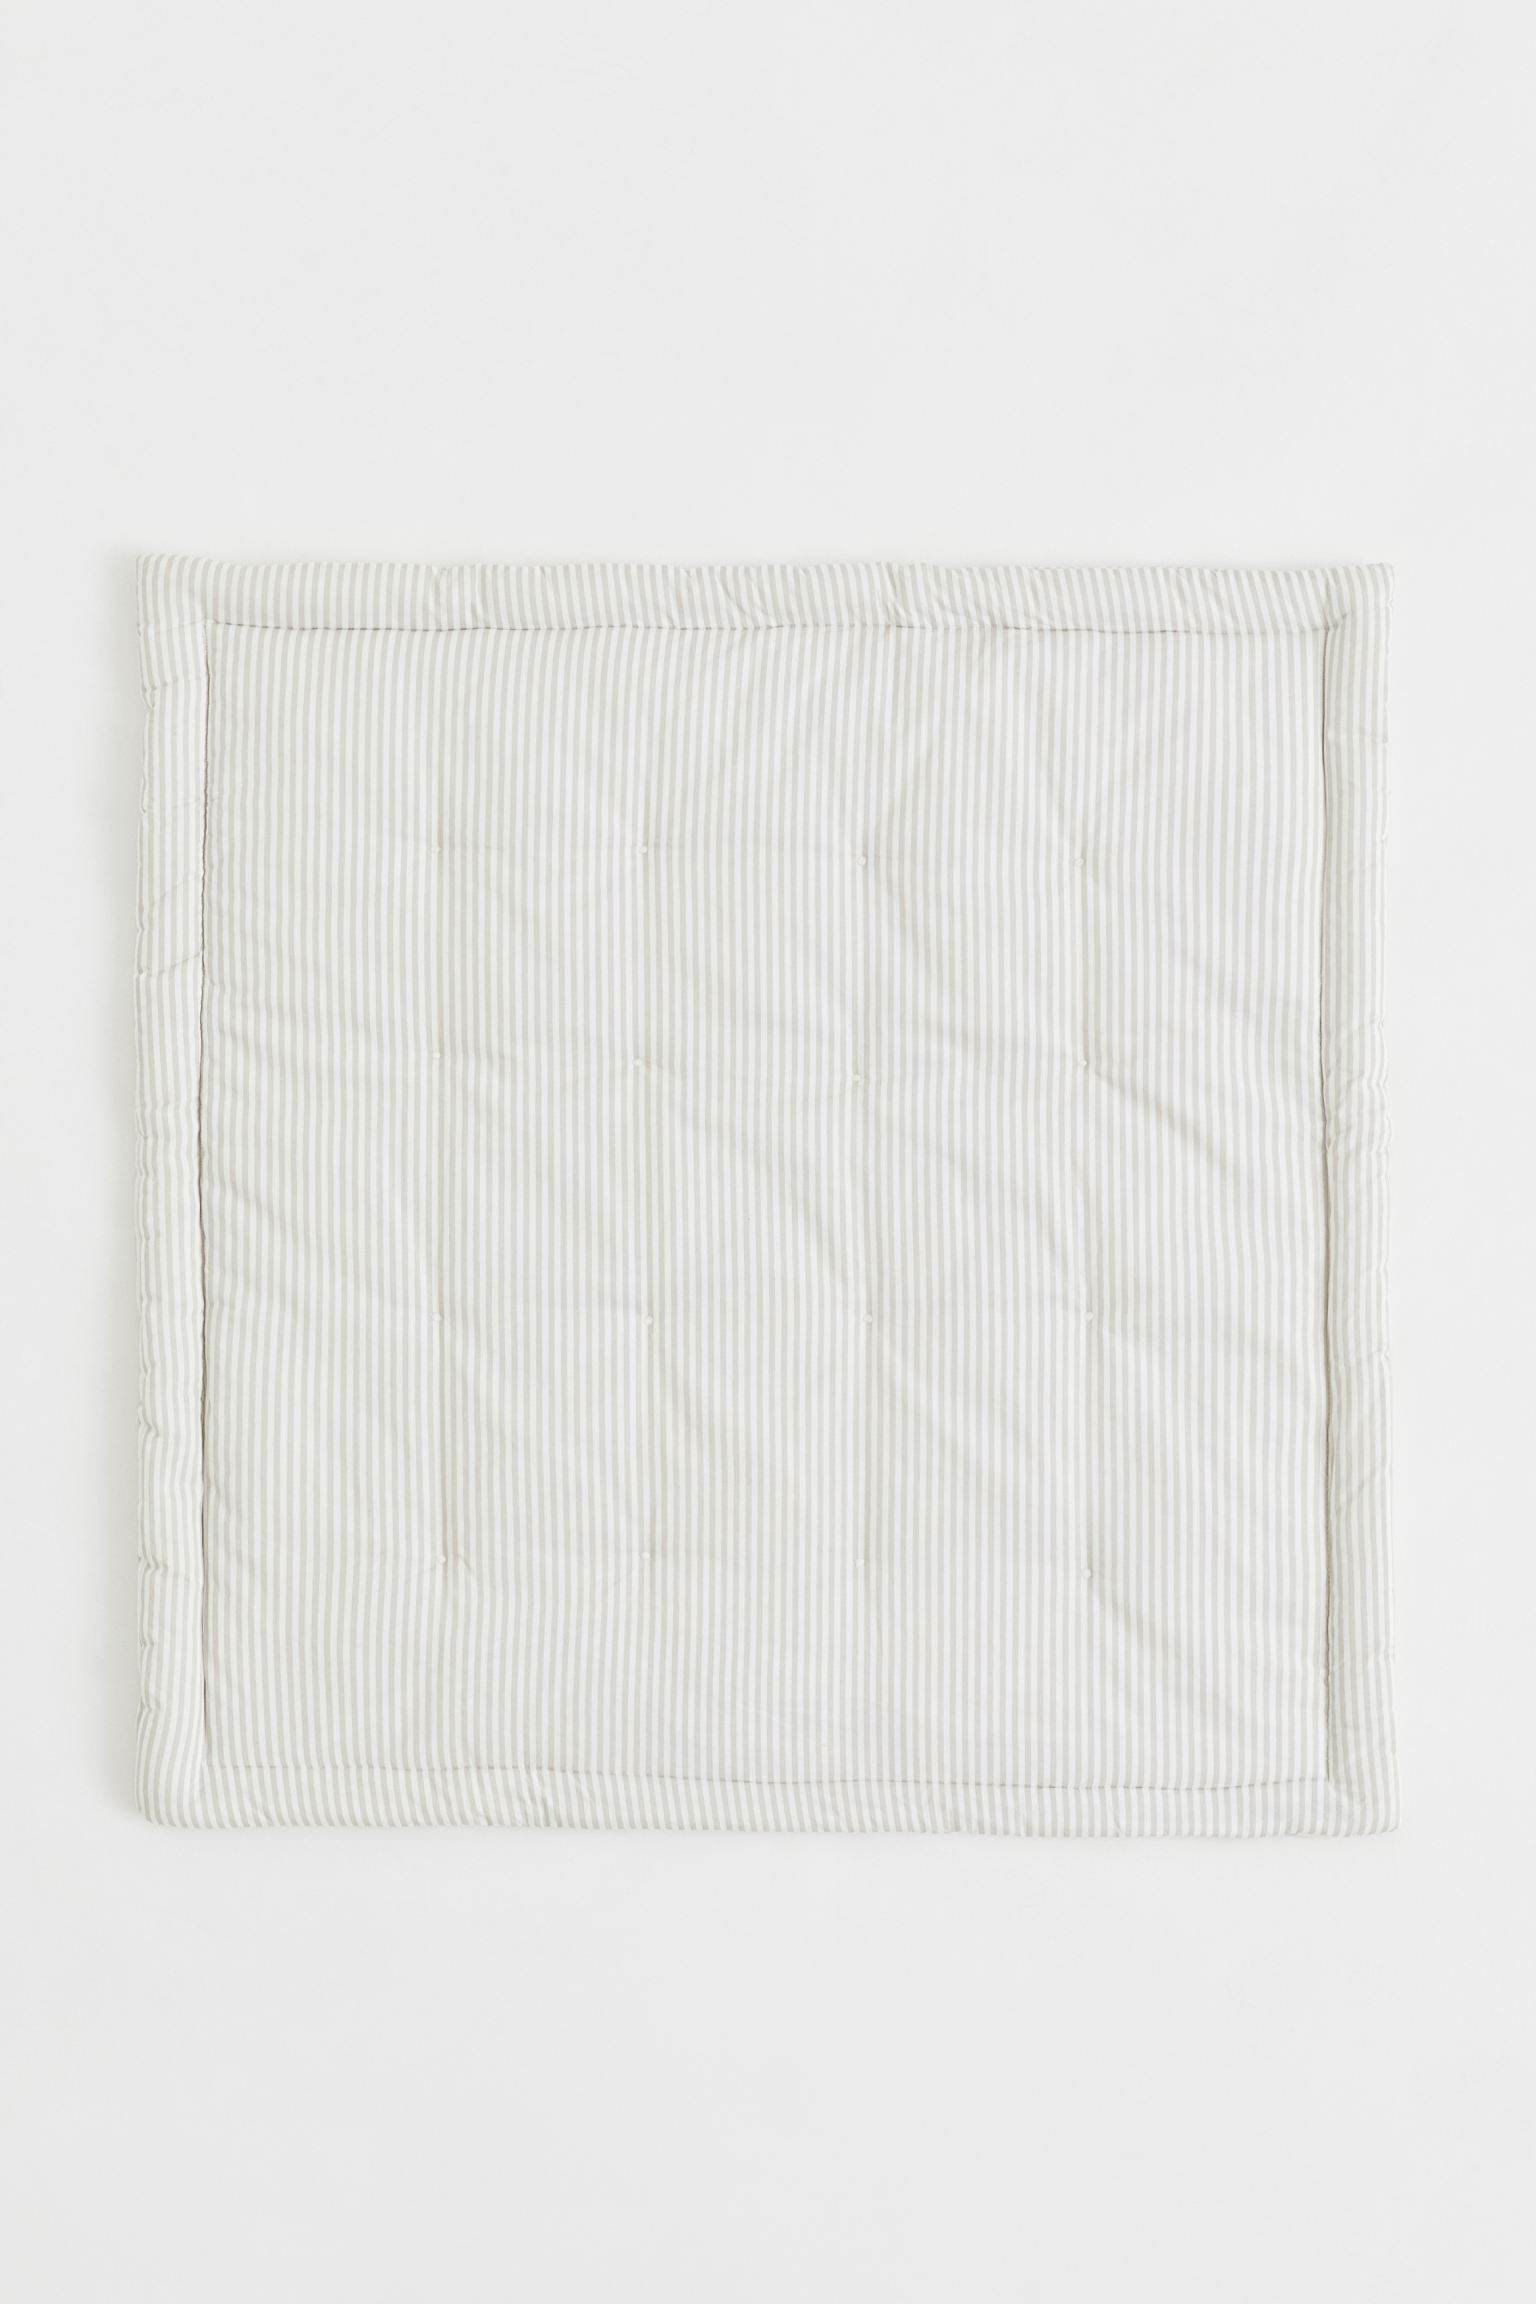 Дитячий килимок бавовняний, Світло-сірий/смугастий, 100x100